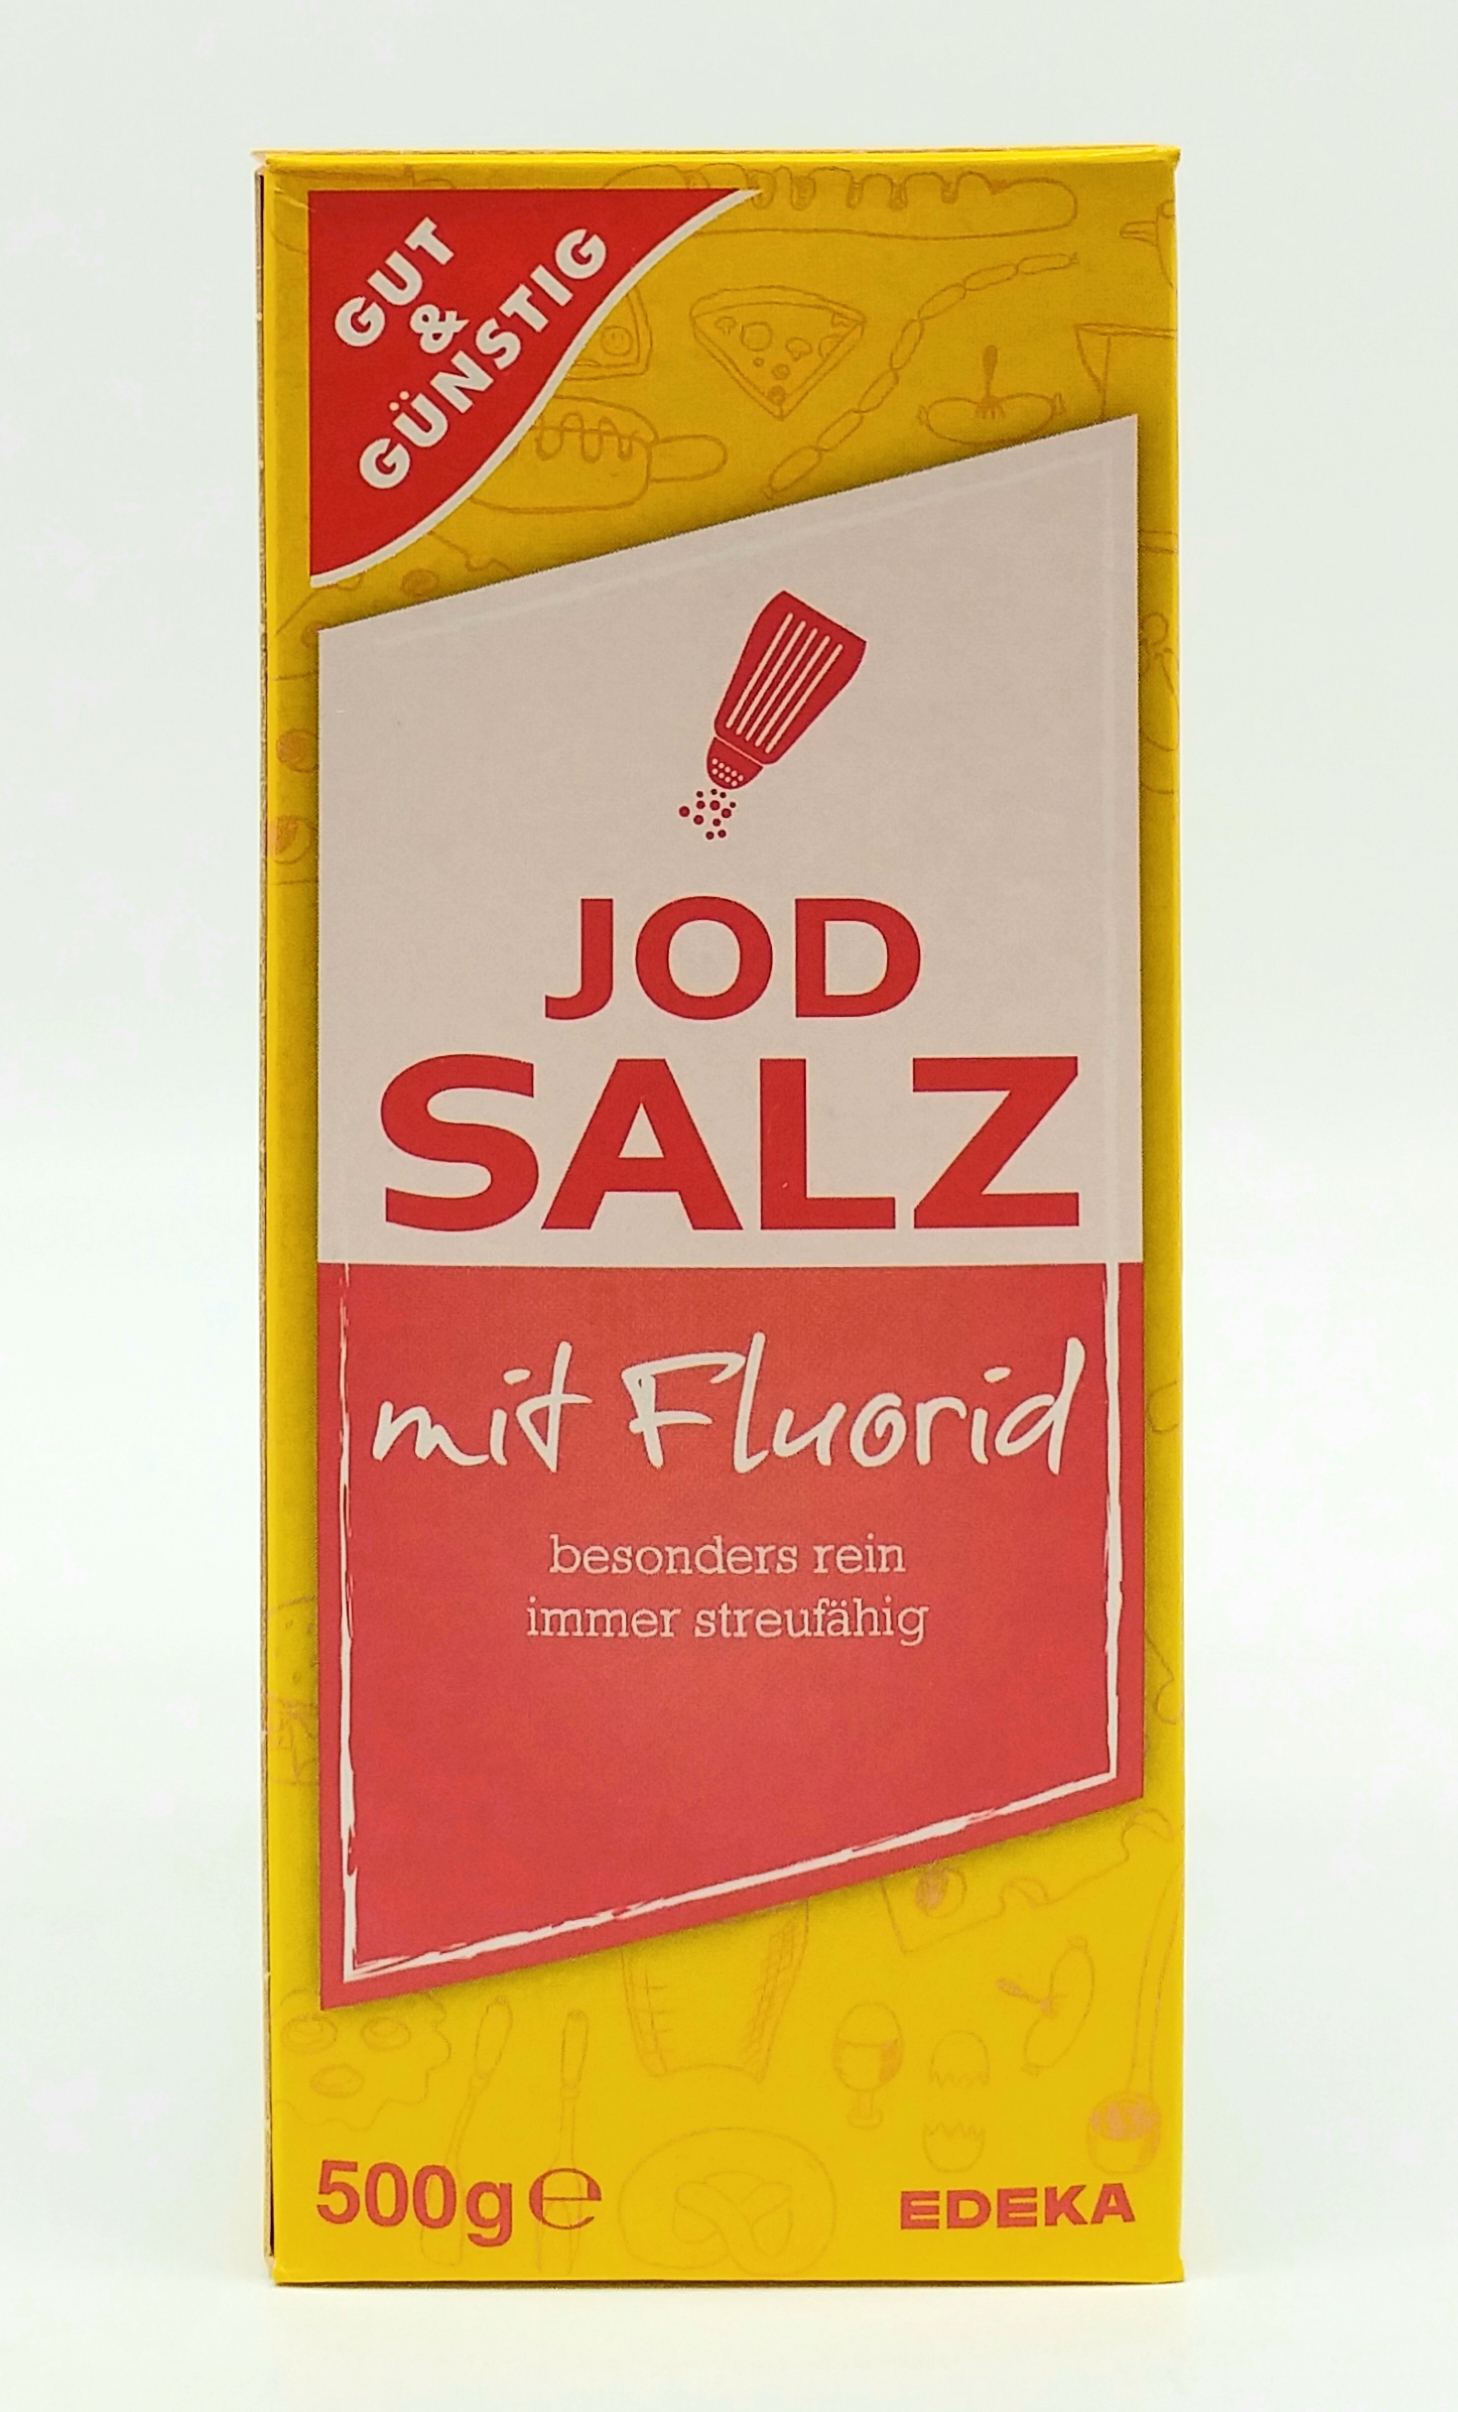 G&G Jodsalz mit Fluorid 500g